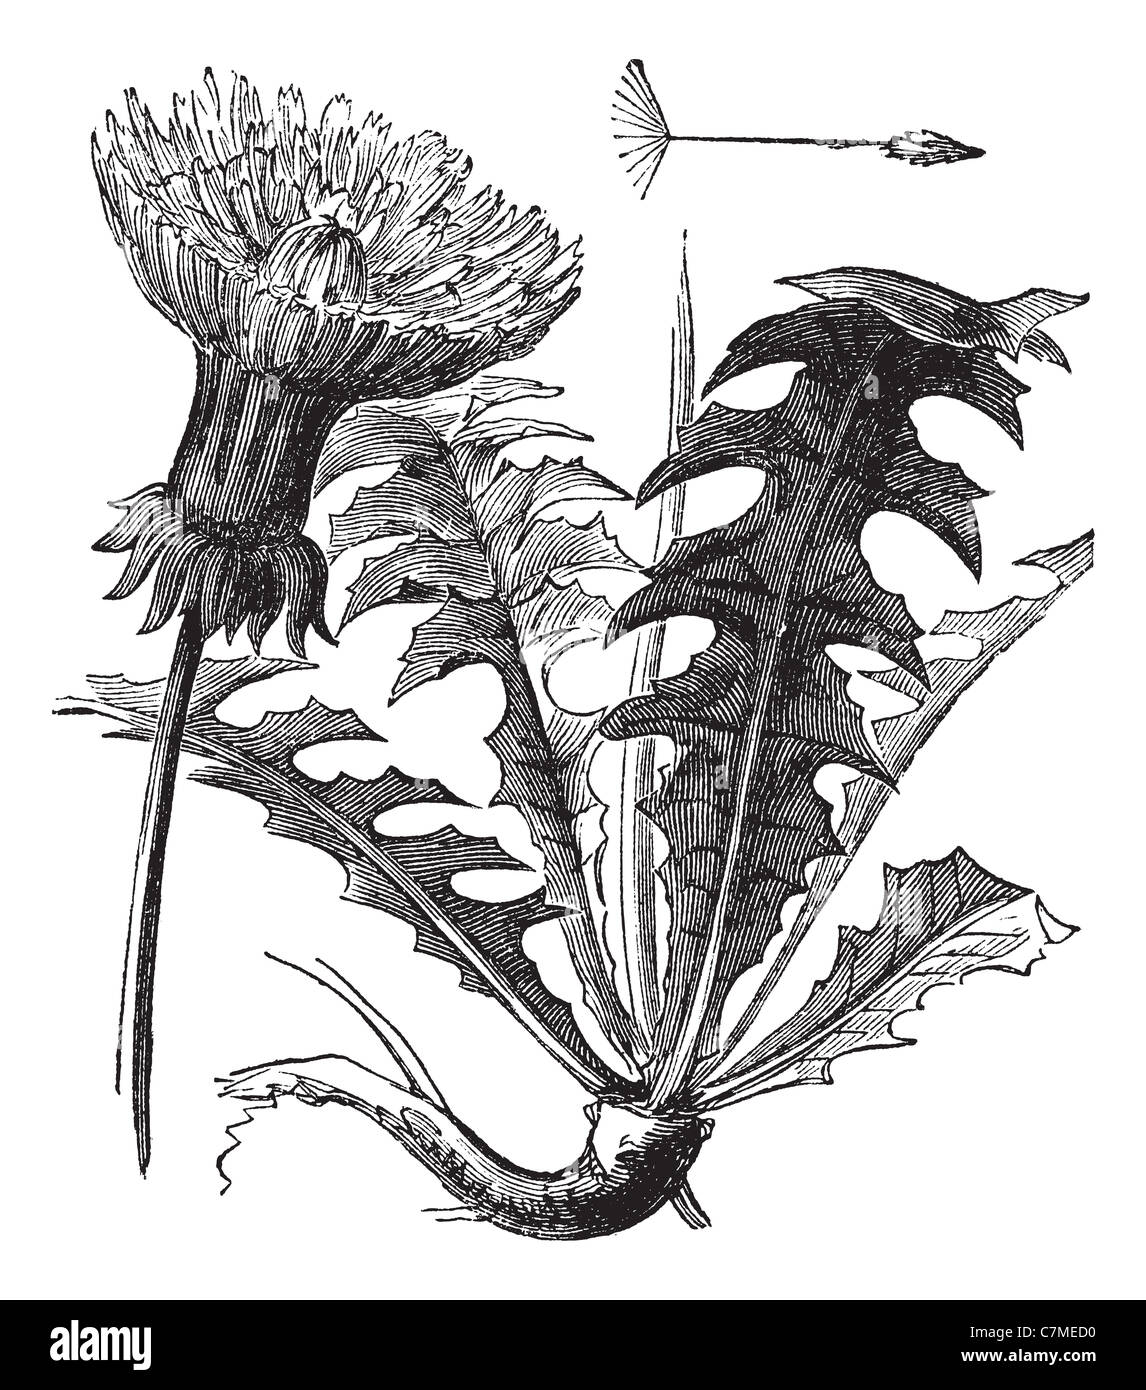 Taraxacum, vintage engraved illustration. Dandelion with leaves on white background. Trousset encyclopedia (1886 - 1891). Stock Photo